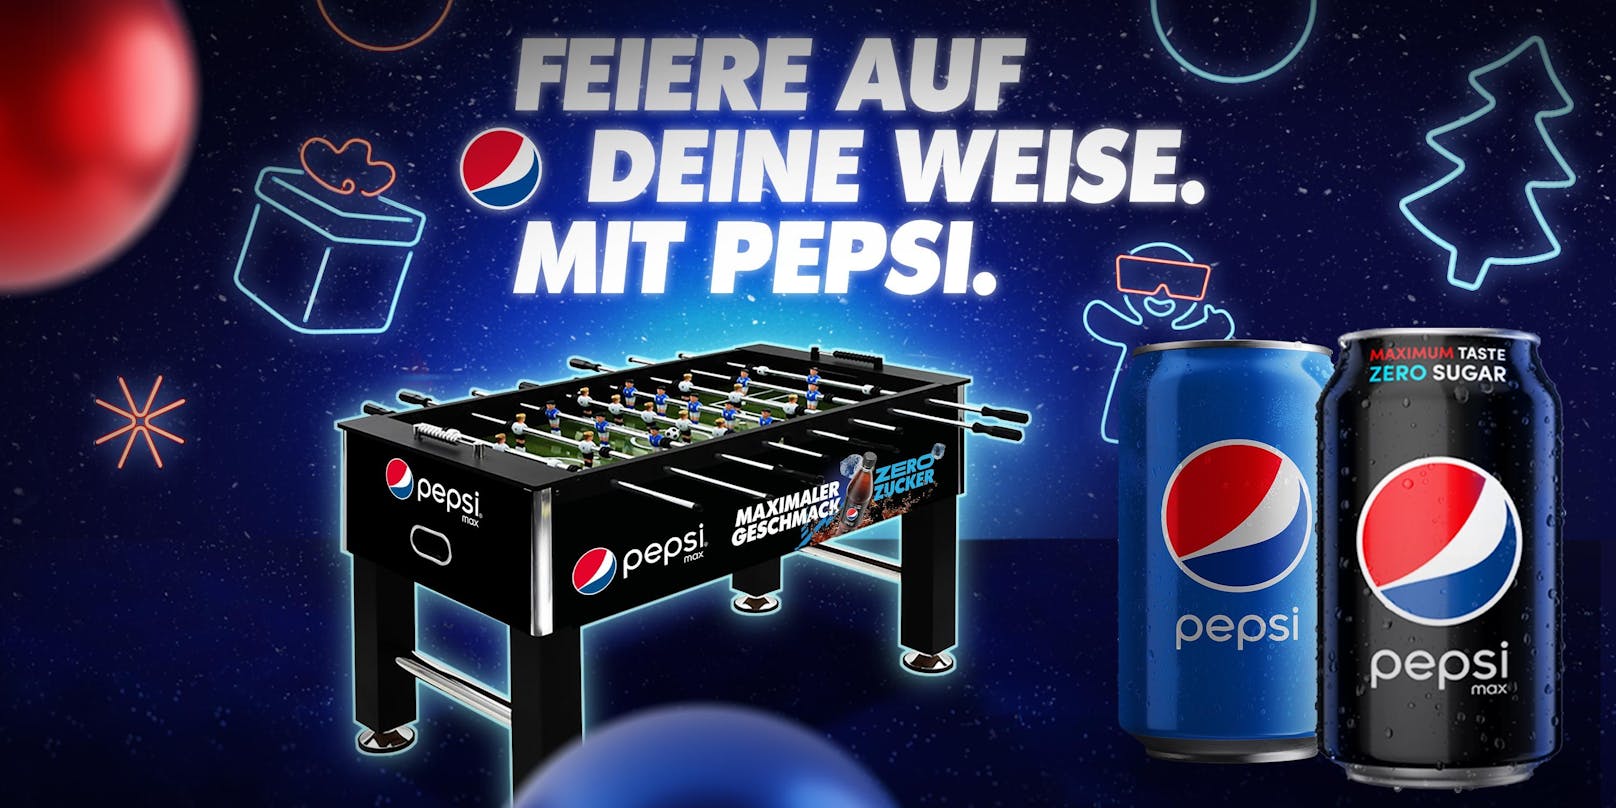 Jetzt gleich mitspielen und ein außergewöhnliches Weihnachtsfest mit Pepsi feiern!